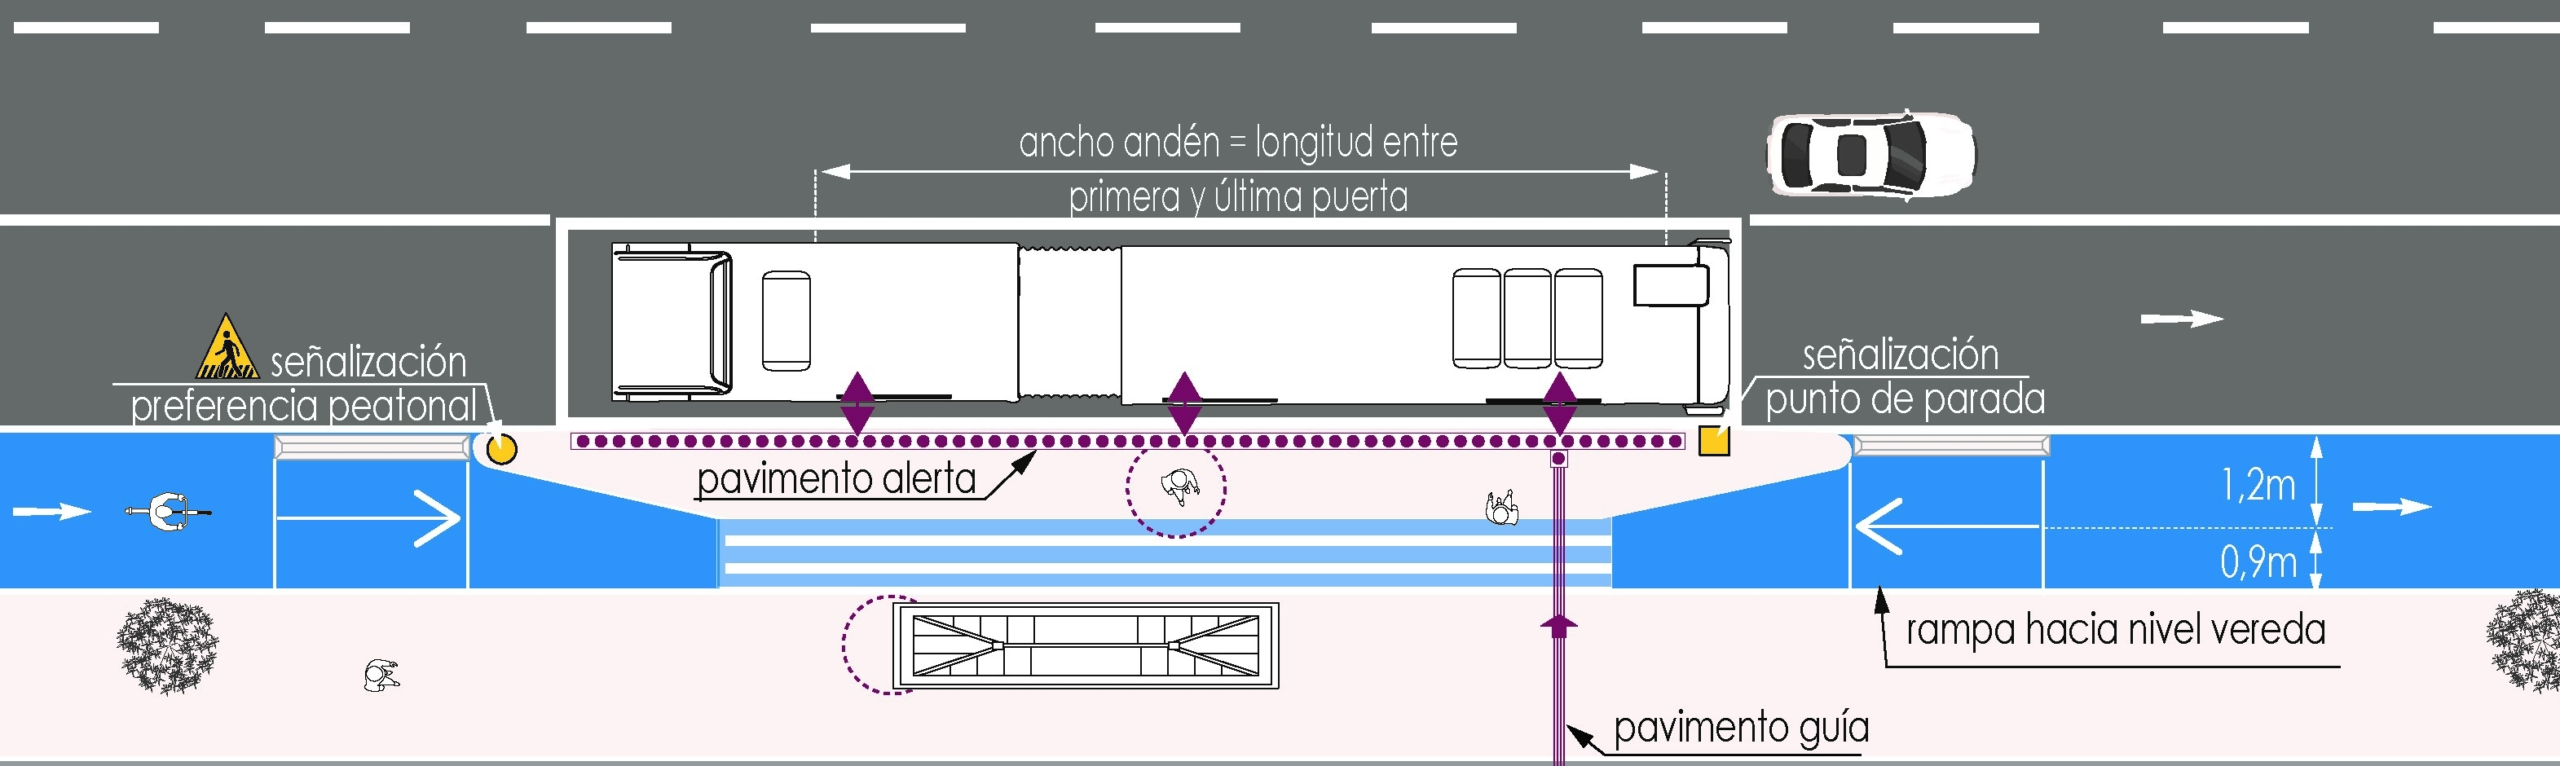 figura de una ciclovía que se enangosta para dejar al menos 1,2 m de ancho de espacio exclusivo para subir o bajar de un bus.